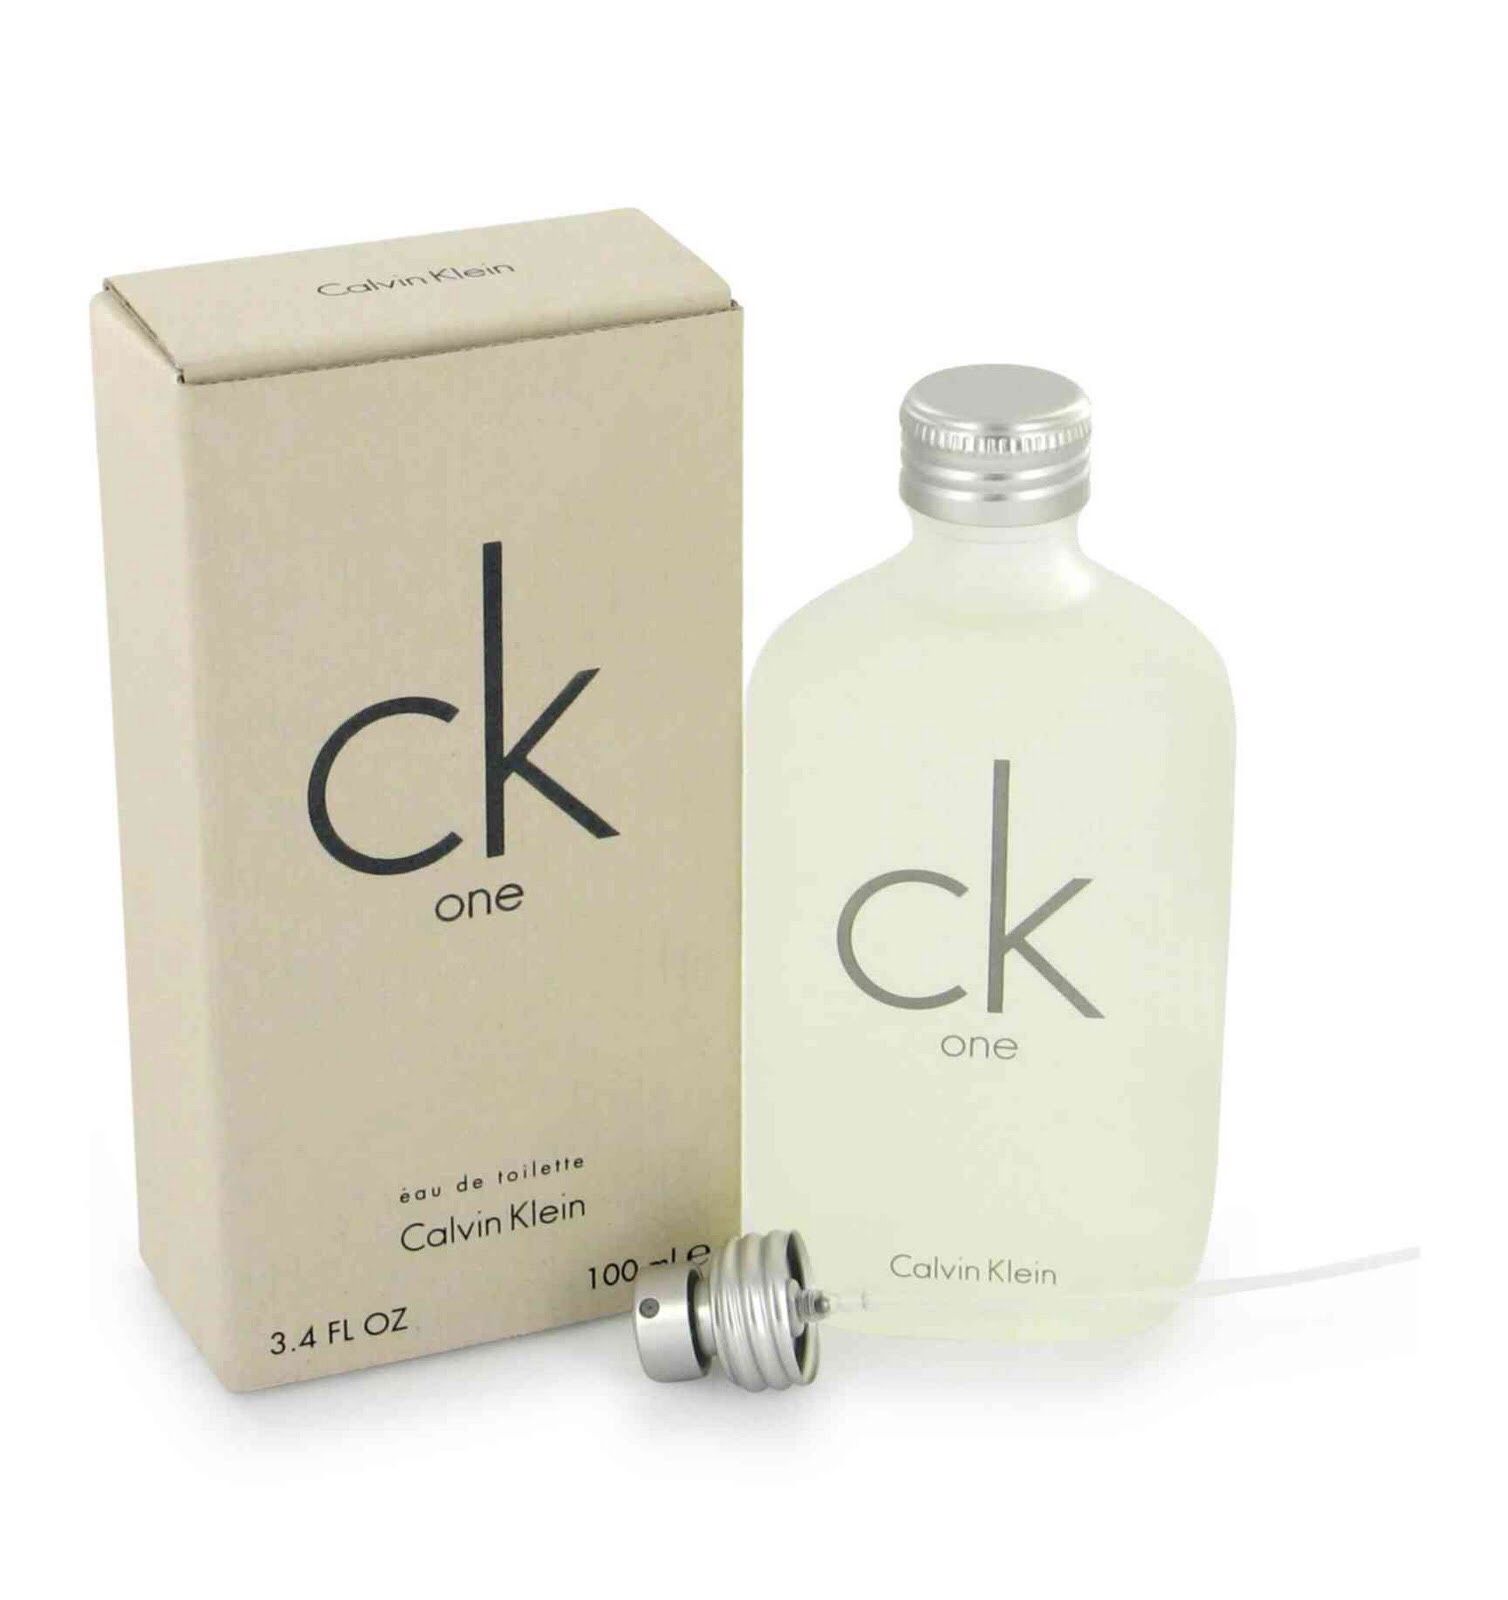 Calvin Klein's CK One (NEW 100 ml) 